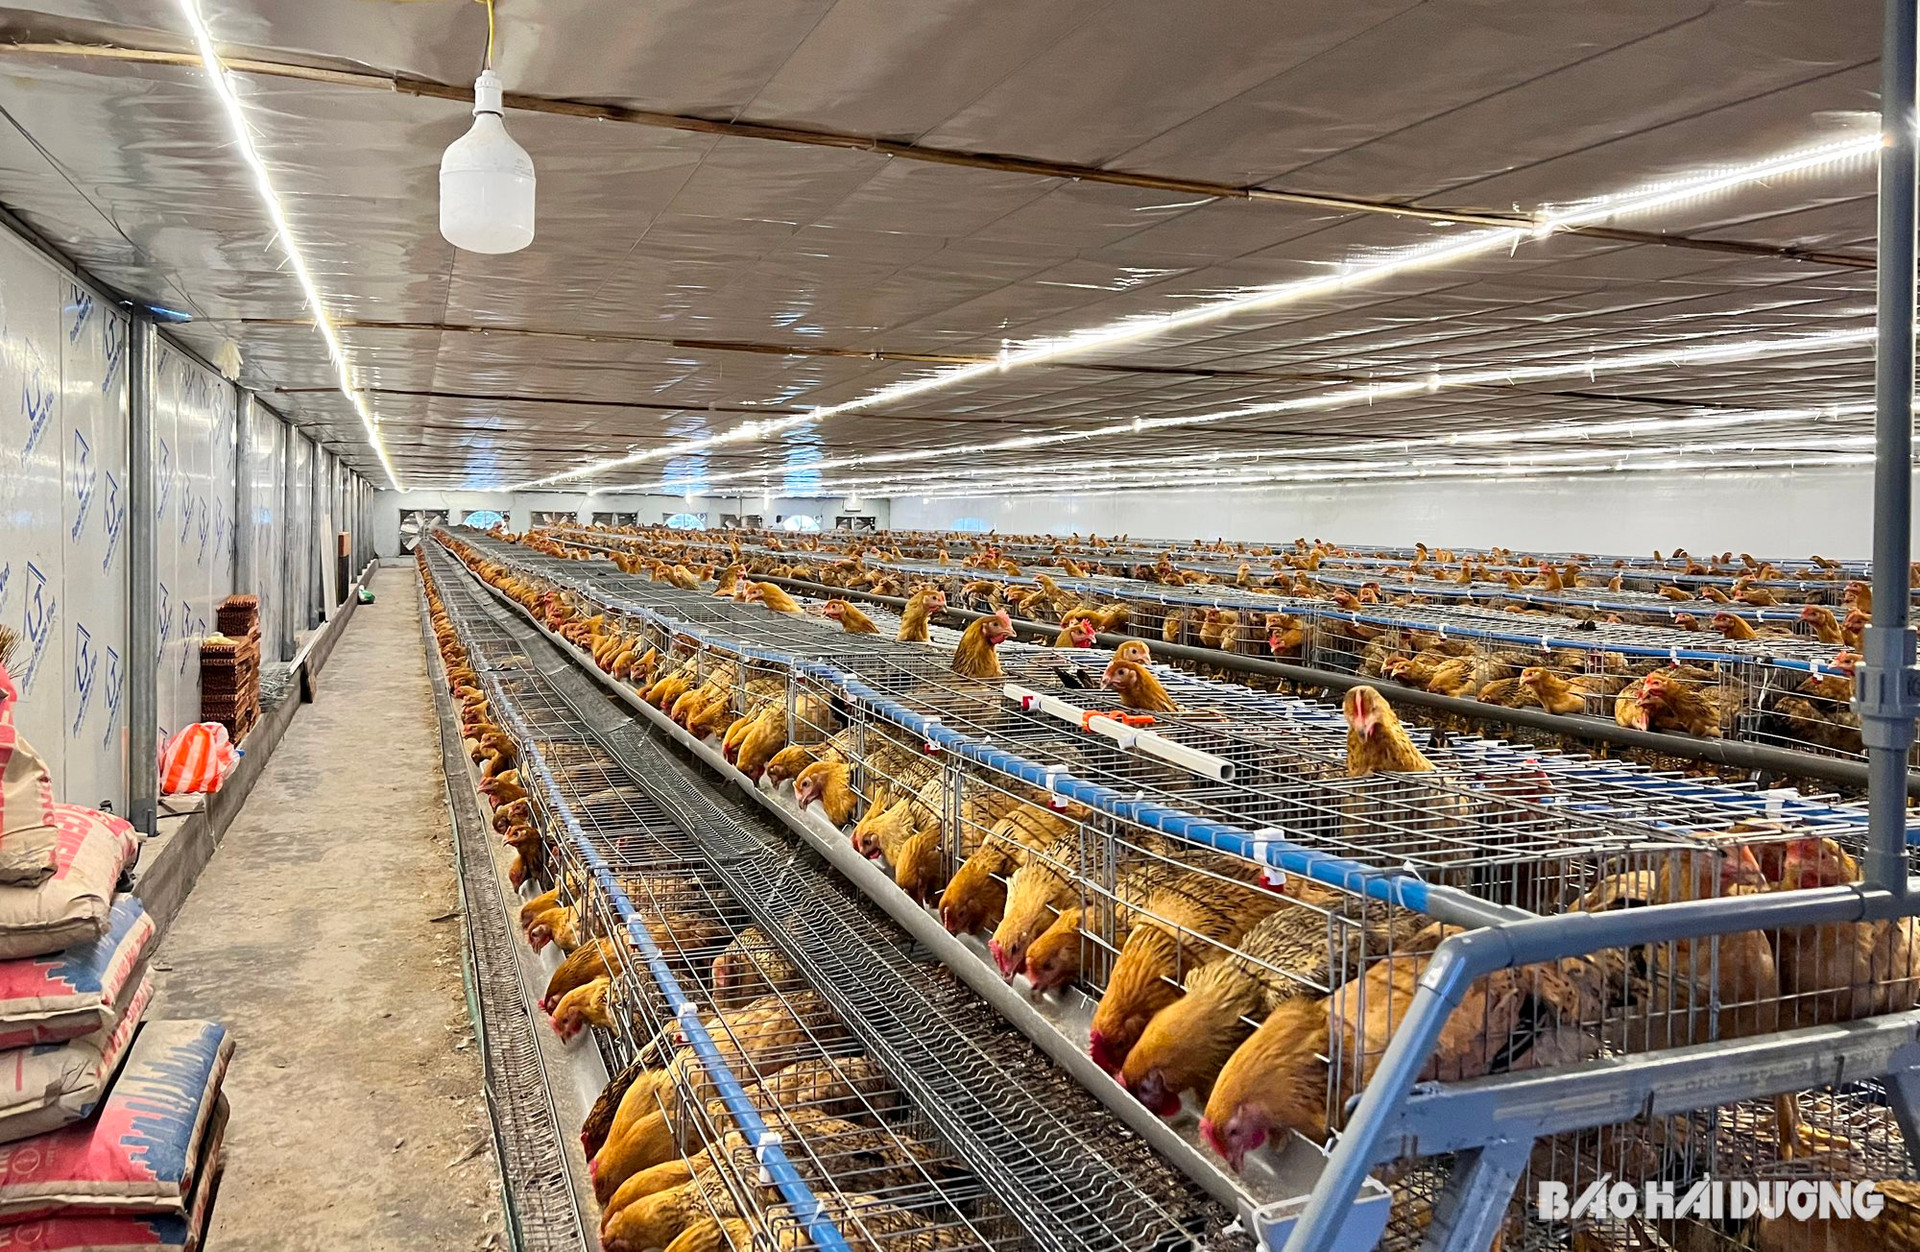 Hộ ông Vũ Xuân Hảo, ở thôn Dôi Hống, xã Lê Lợi (Gia Lộc) nuôi hàng nghìn con gà trong khu chuồng vi phạm công trình thủy lợi